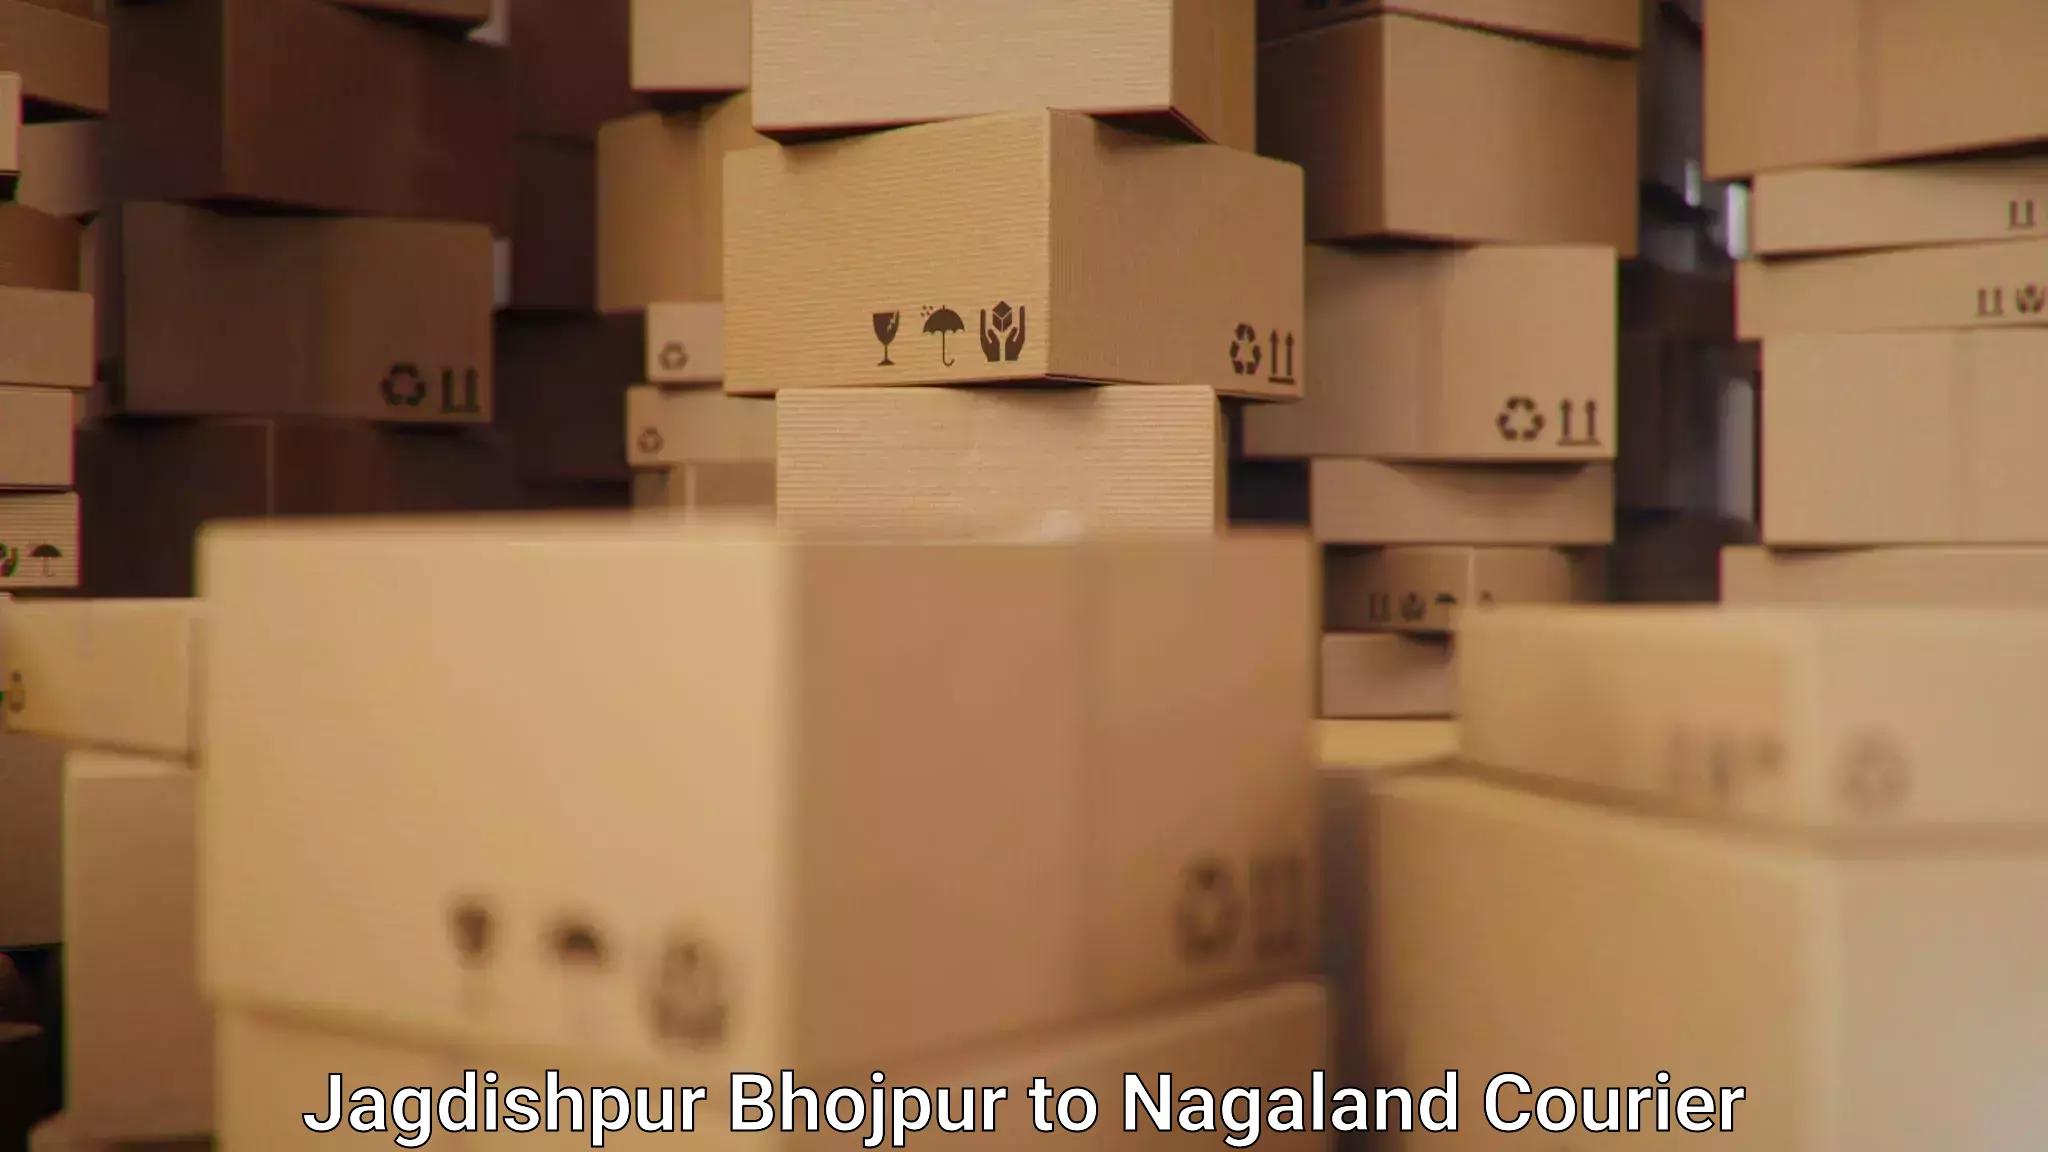 Express courier facilities Jagdishpur Bhojpur to NIT Nagaland